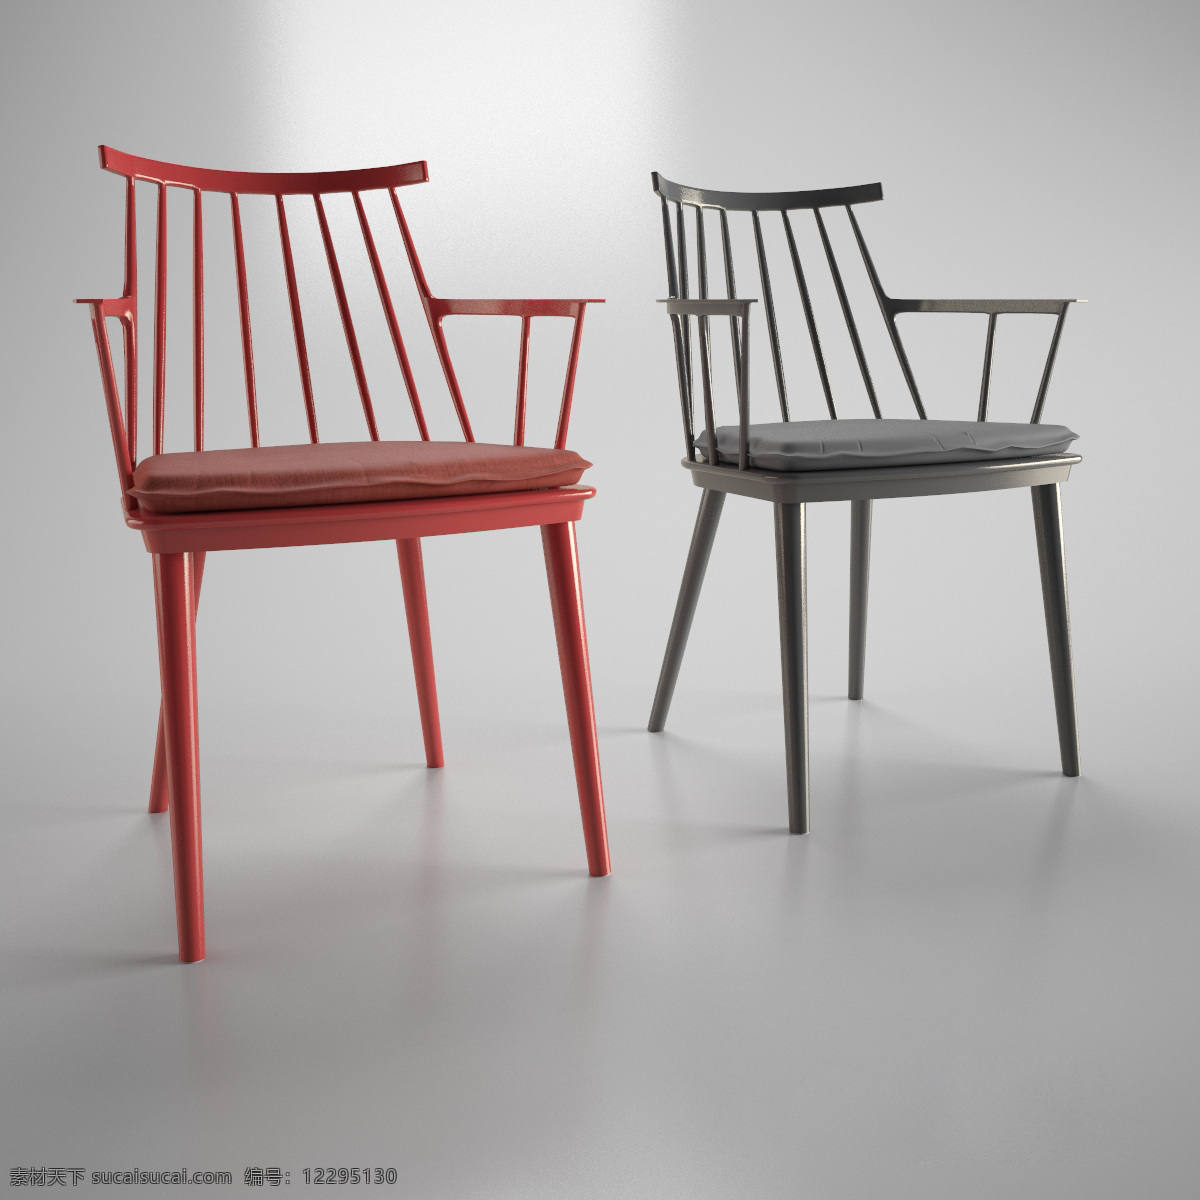 红色 不锈钢 镂空 椅子 模型 餐椅 3d渲染 模型下载